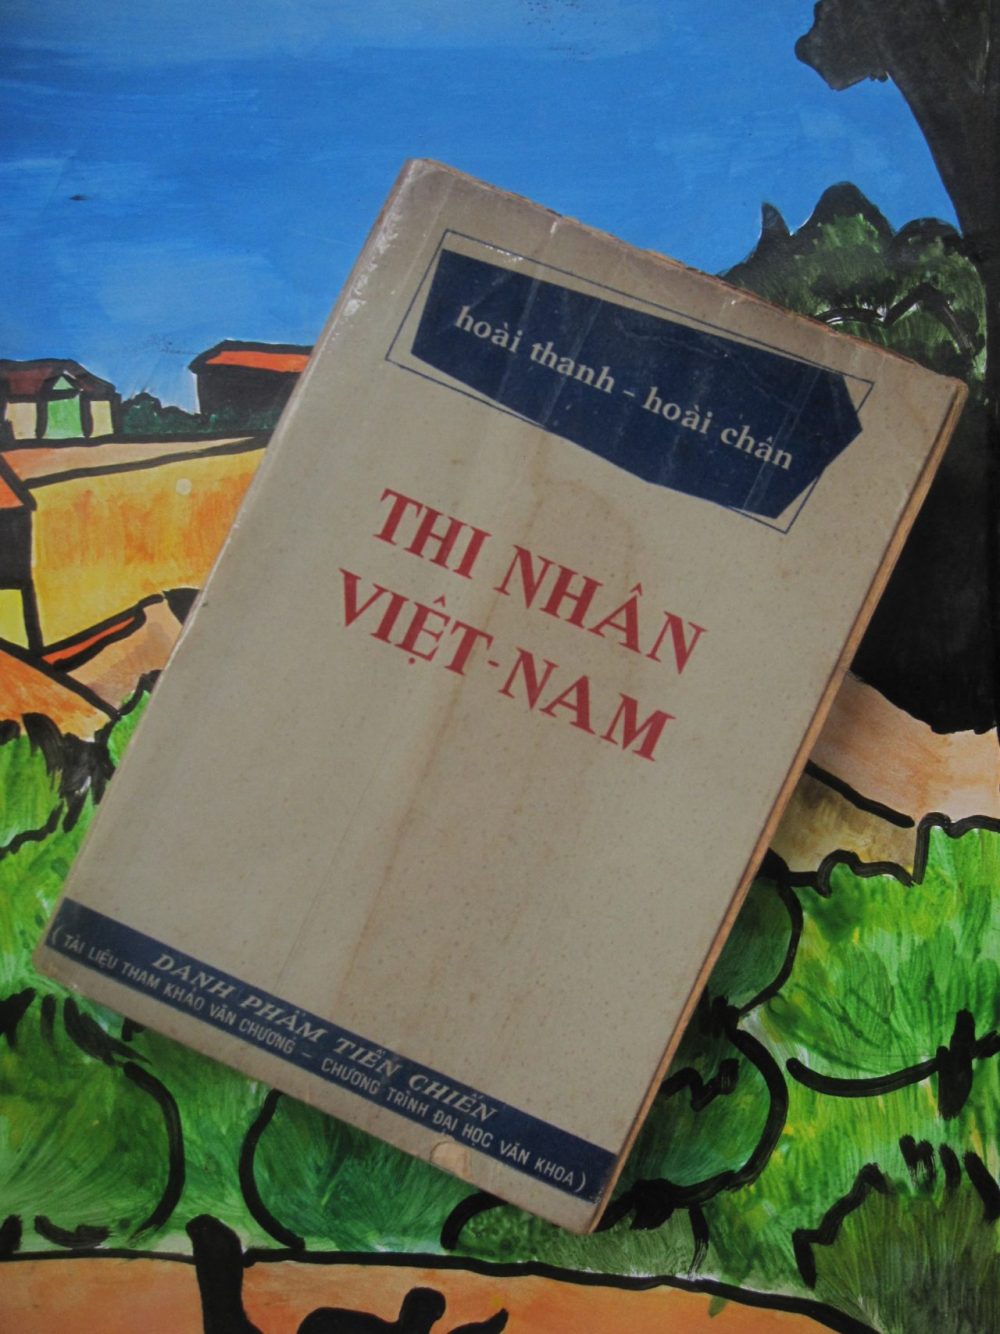 thi nhan viet nam Hoai Thanh e1592064532379 - Hoài Thanh và con đường tới nhà phê bình văn học đứng đầu thế kỉ XX